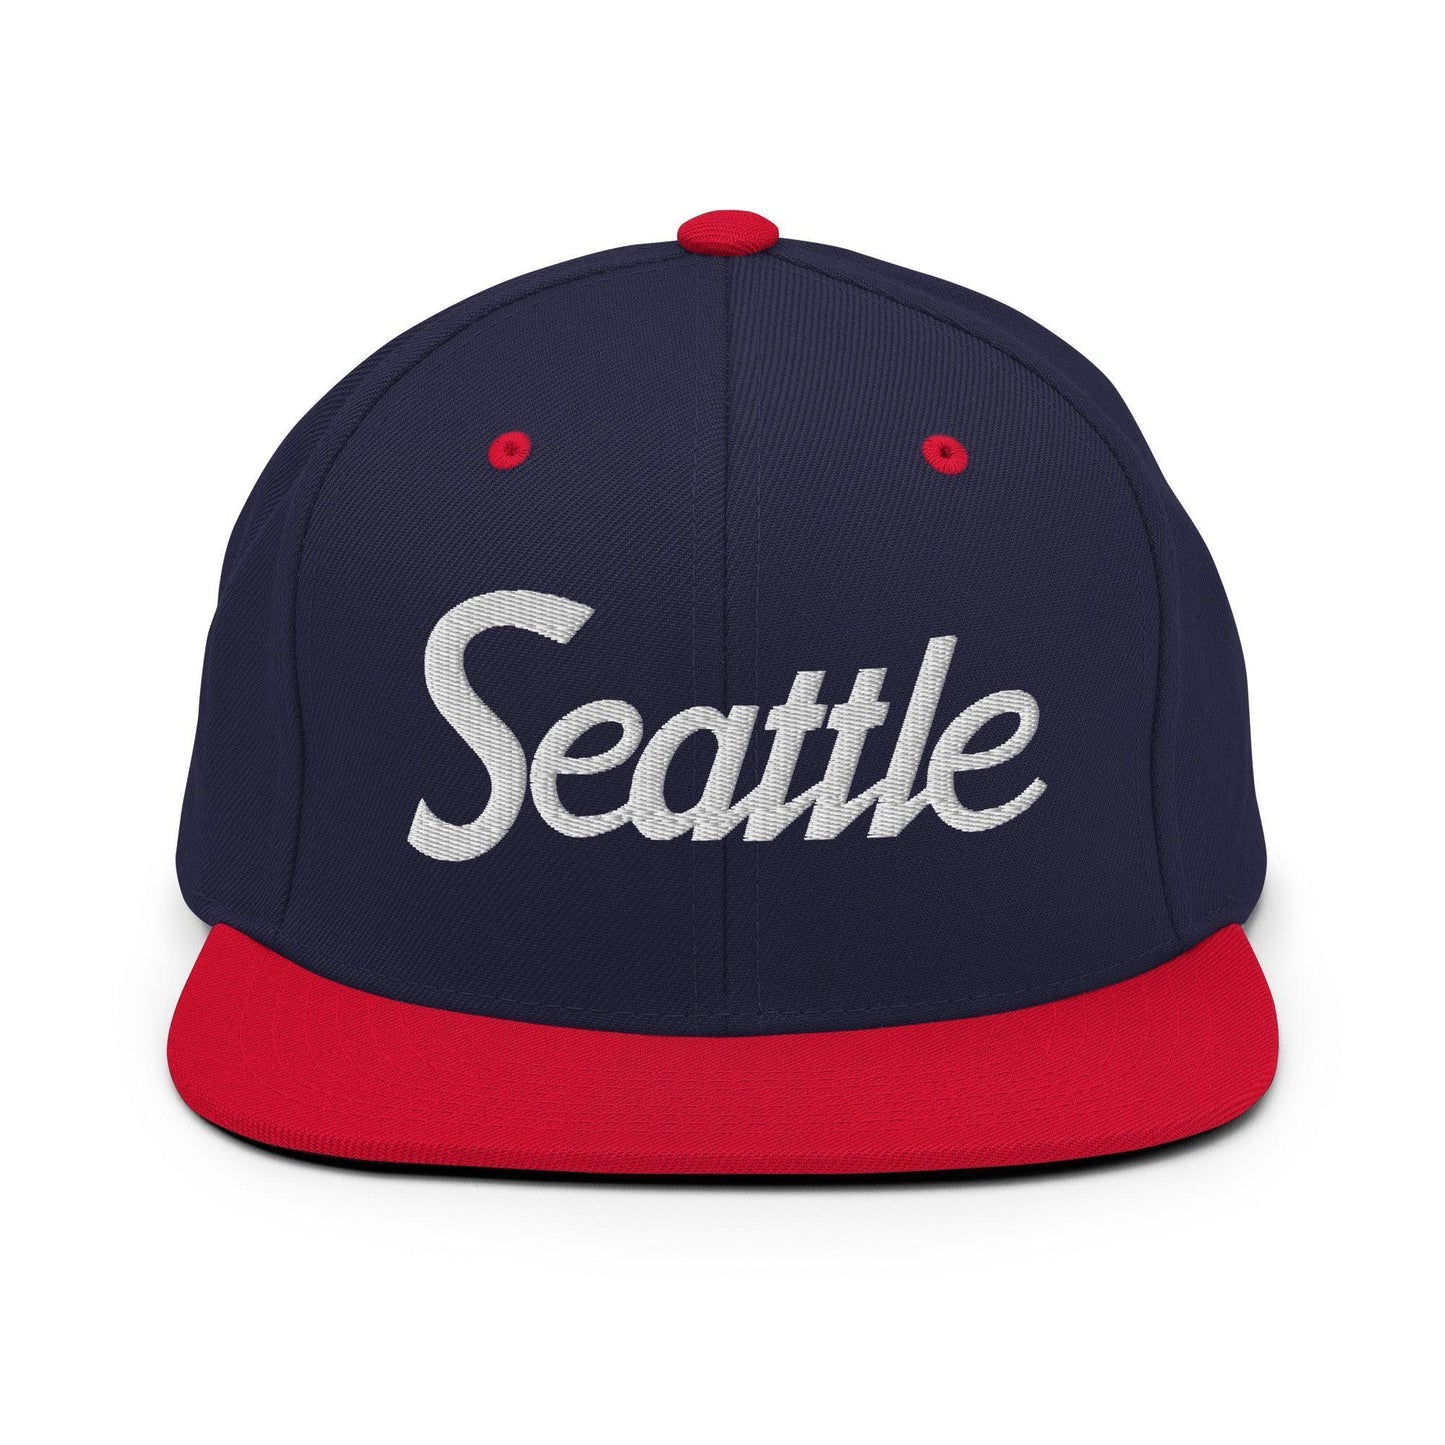 Seattle Script Snapback Hat Navy/ Red